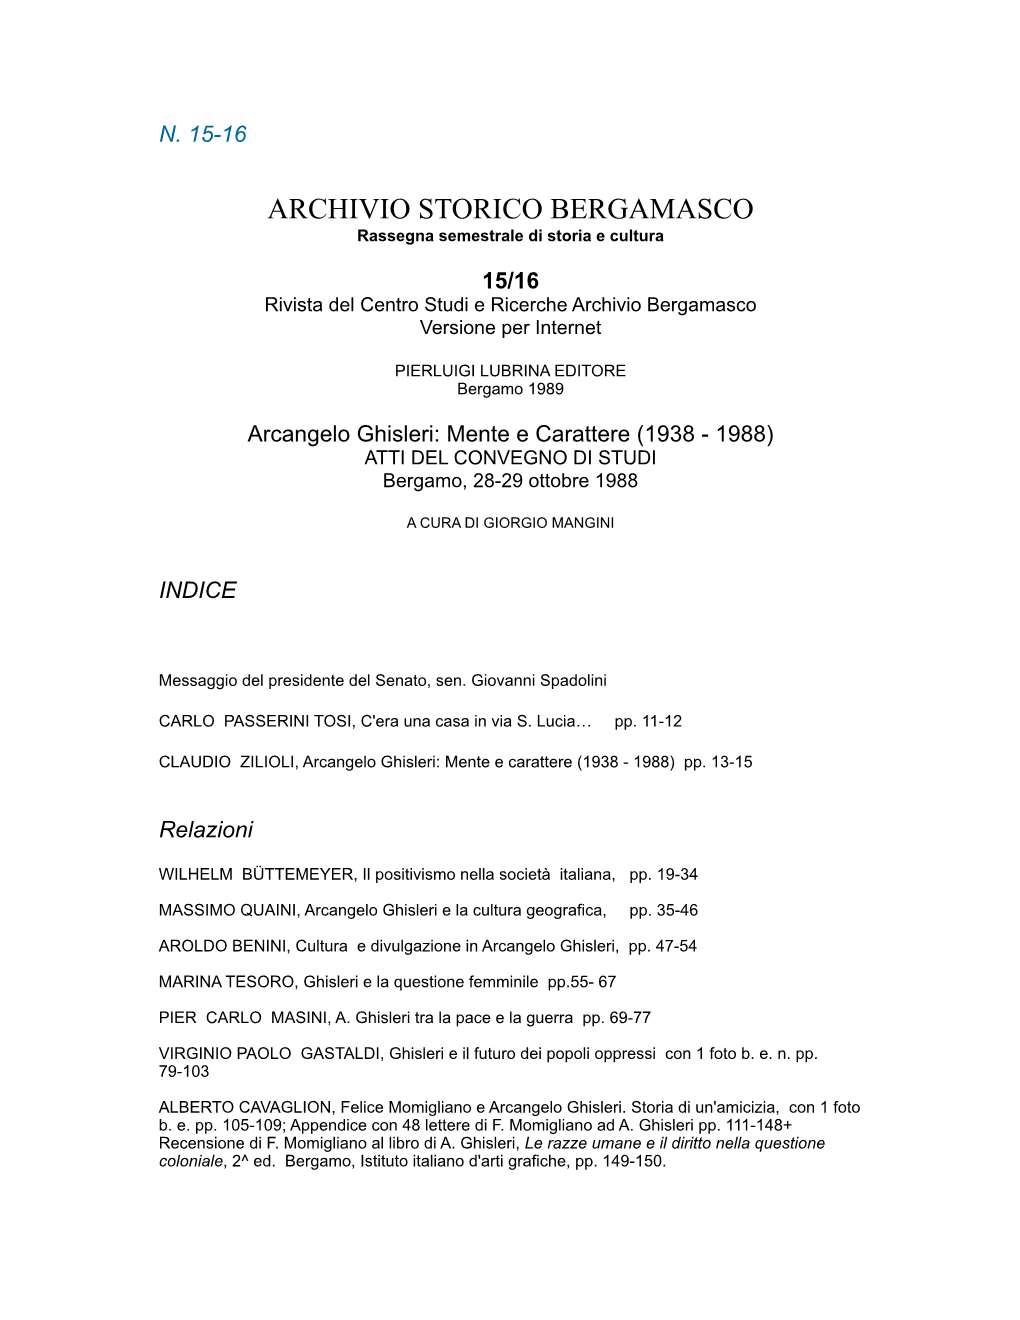 Roberto Ardigò (5) ) L'inizio Del Positivismo Italiano Nella Sua Forma Manifesta Come Corrente Filosofica E Scientifica